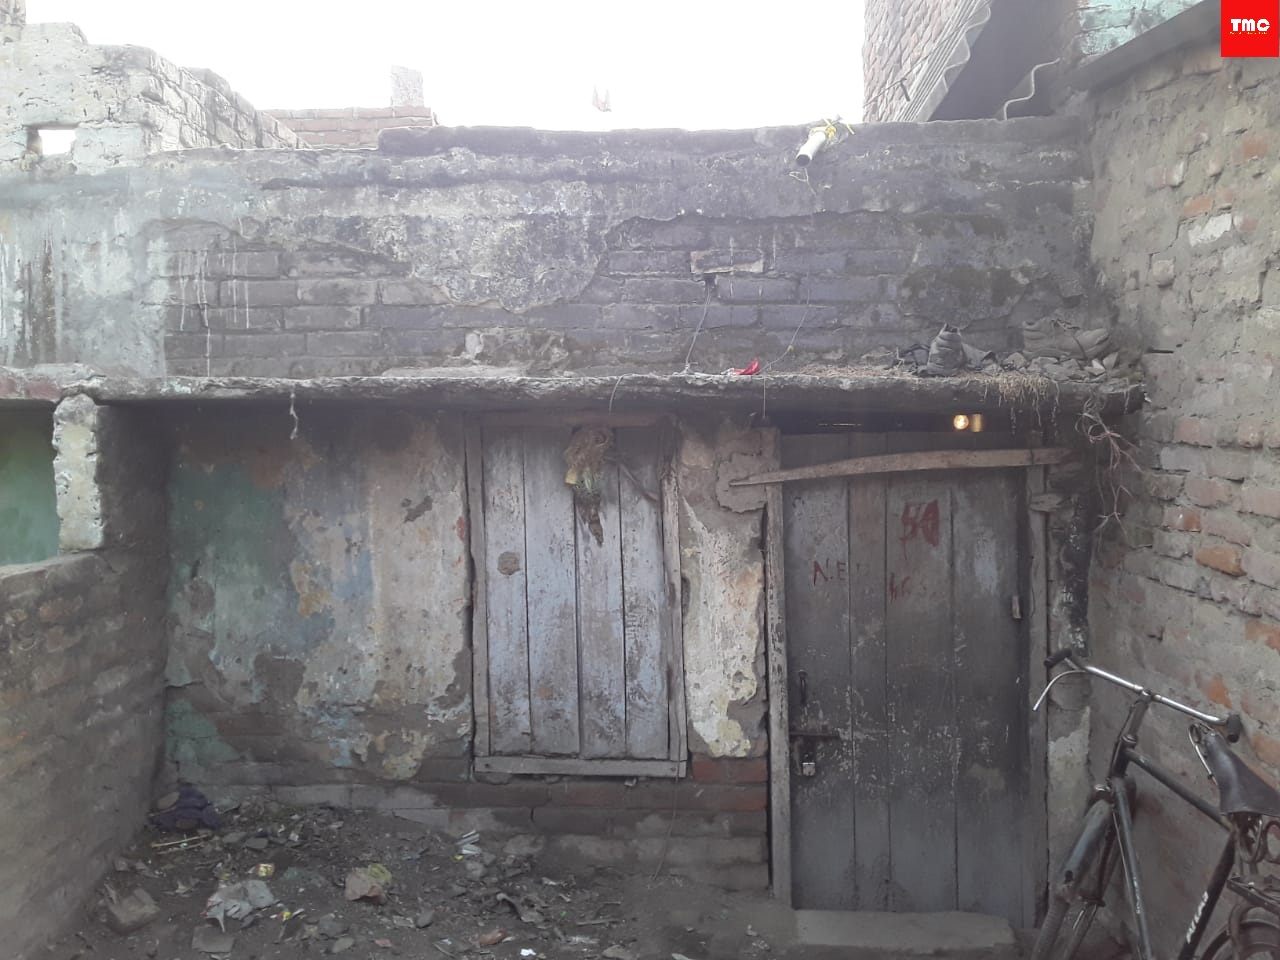 A house built for slum dwellers in Lalu Prasad regime